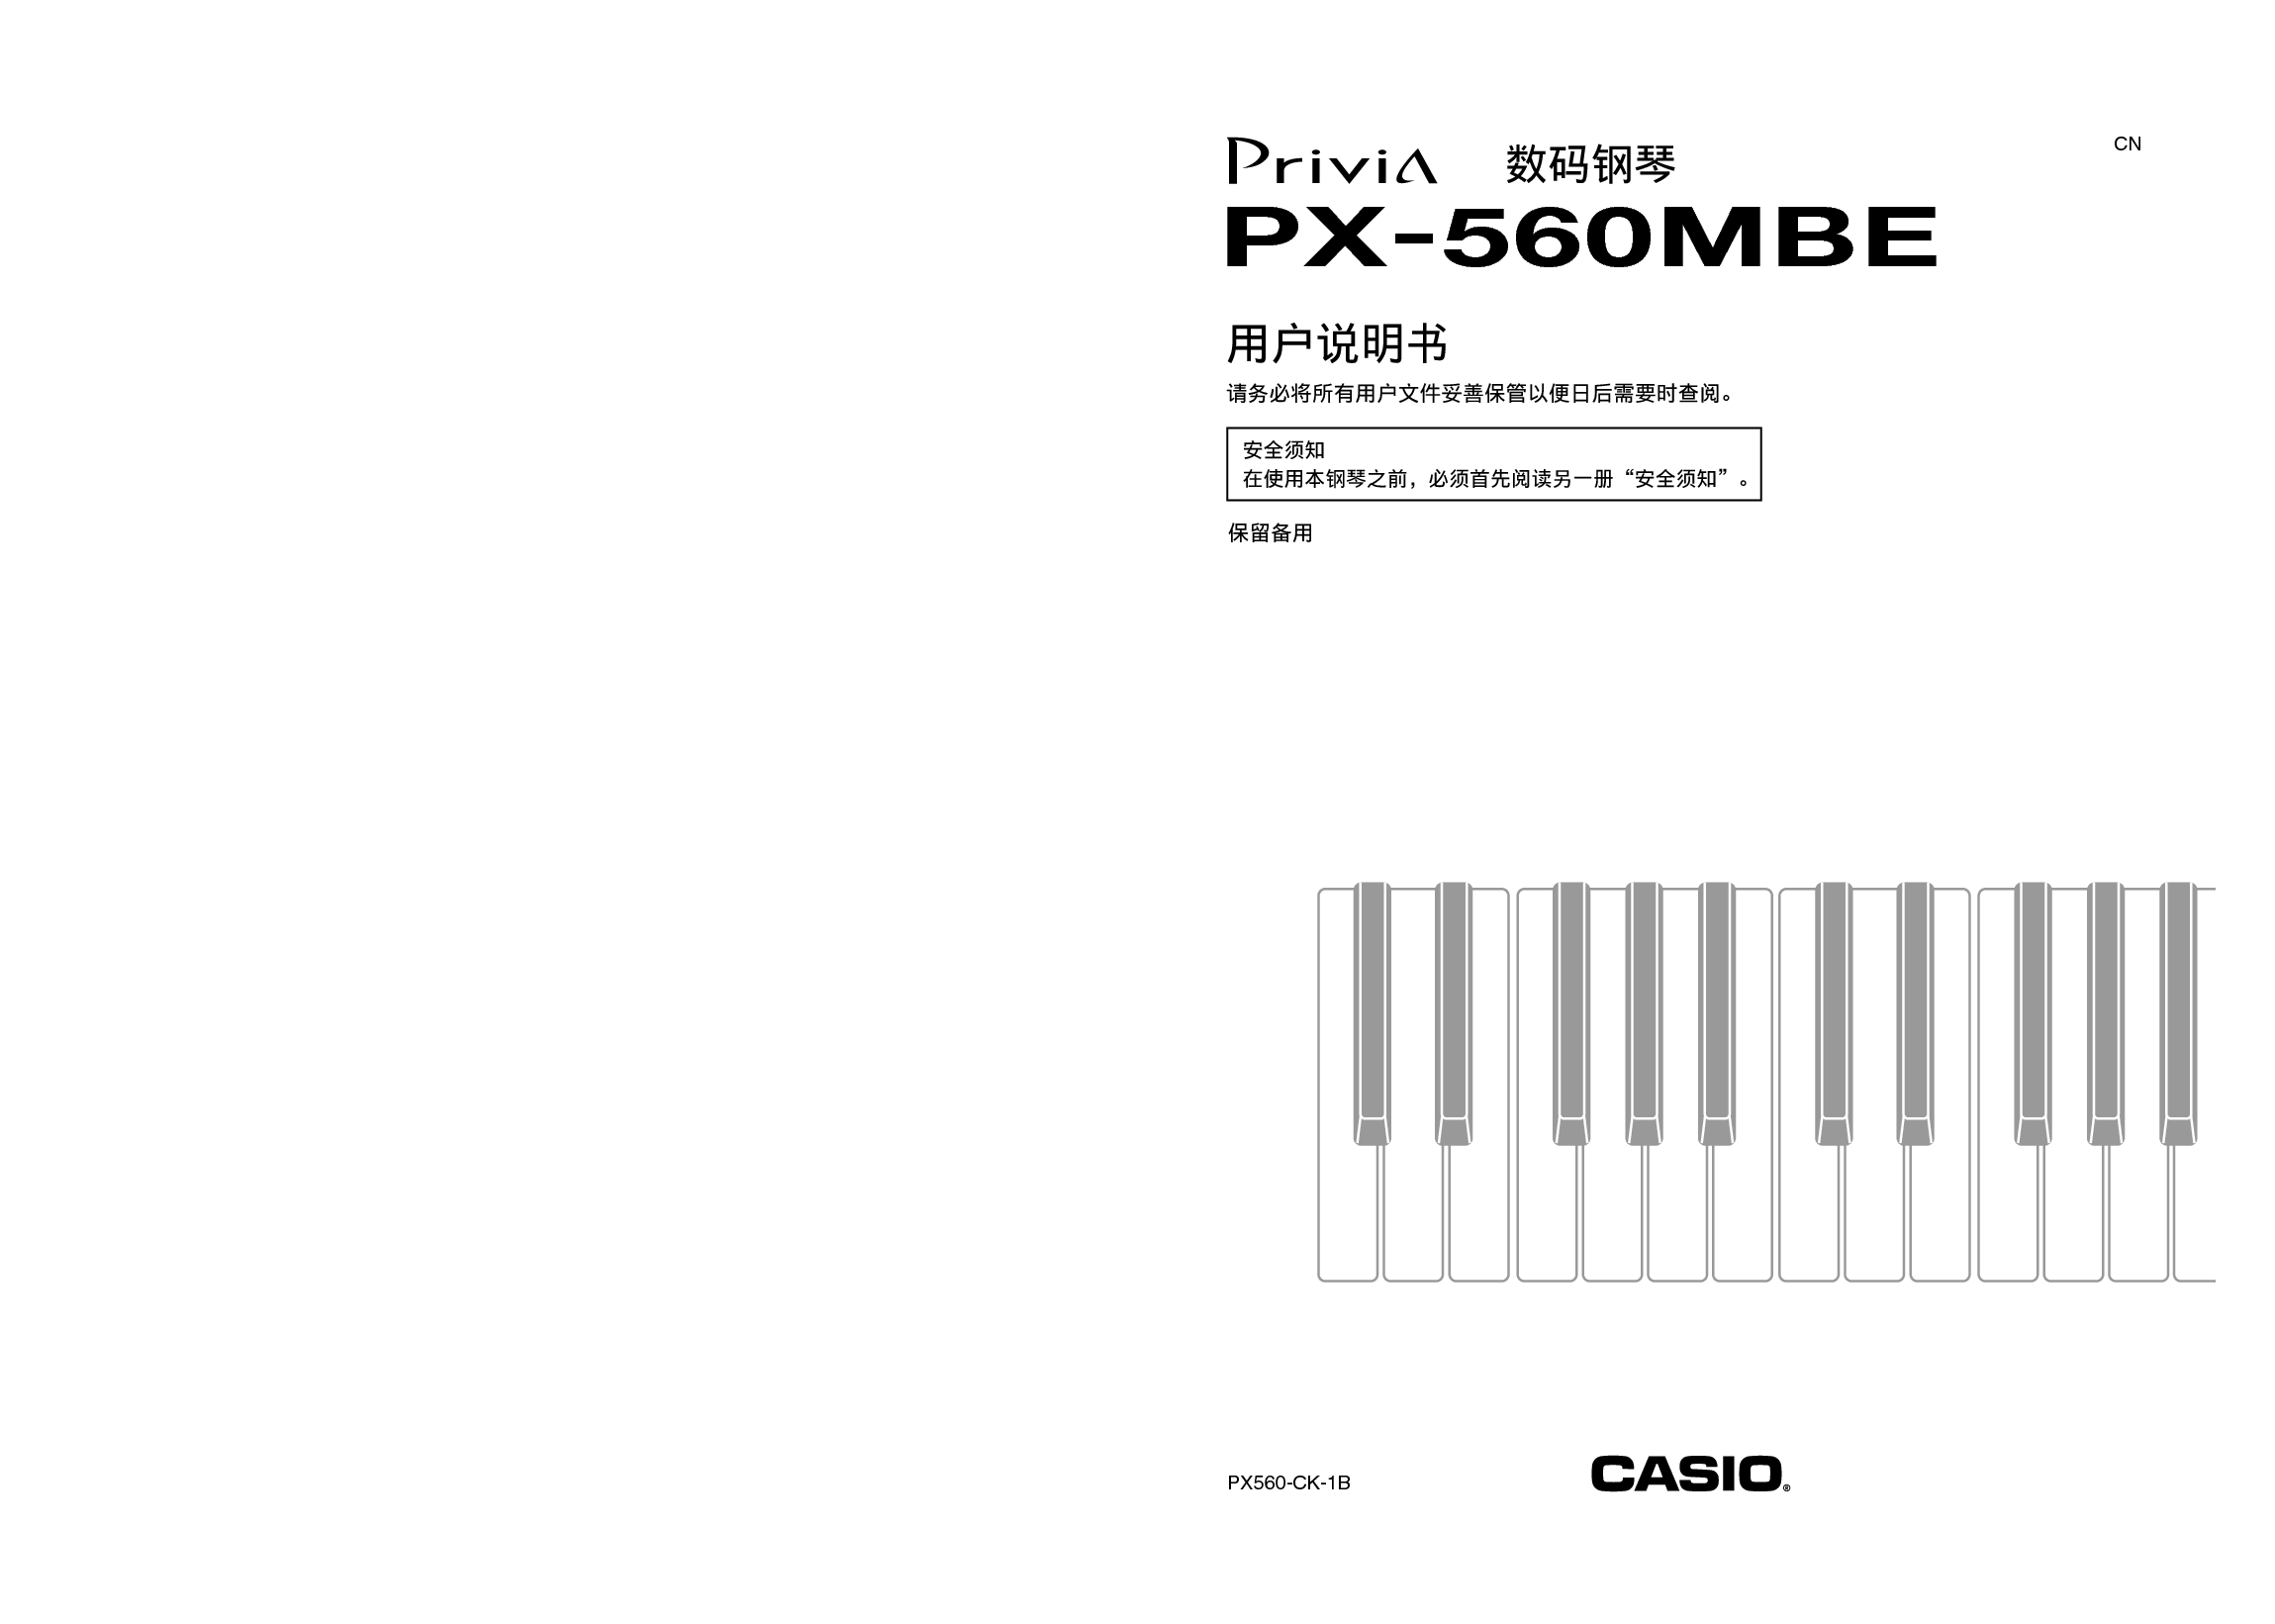 卡西欧 Casio PX-560MBE 使用说明书 封面